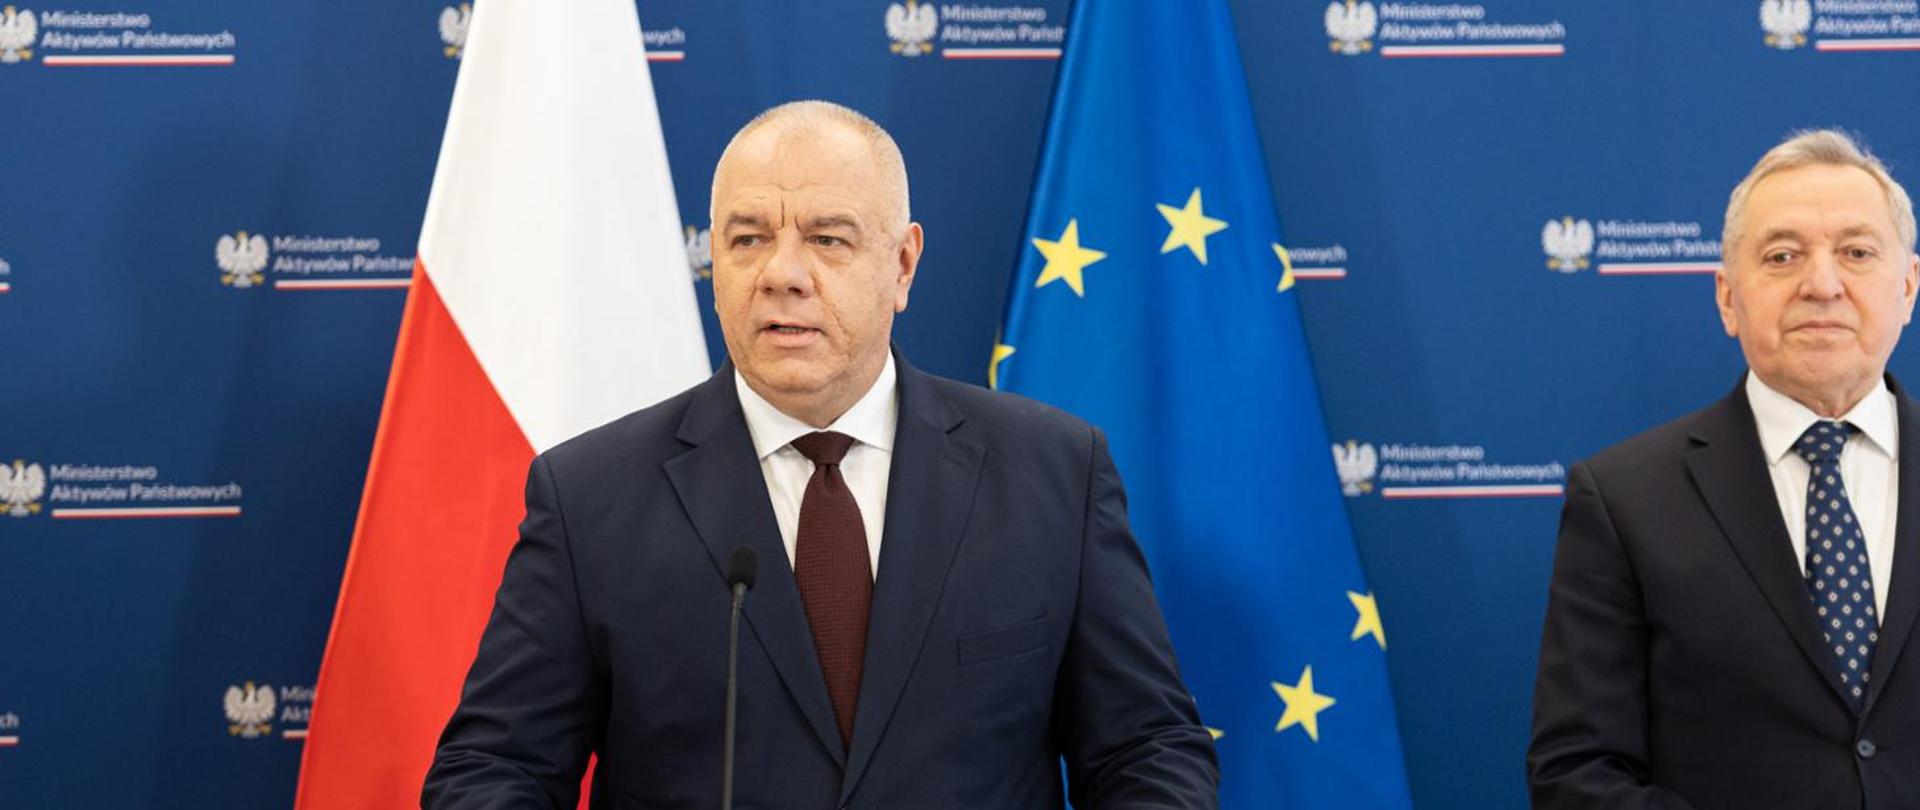 Wicepremier Jacek Sasin preferencyjny kredyt dla rolników ma wzmocnić polskie rolnictwo